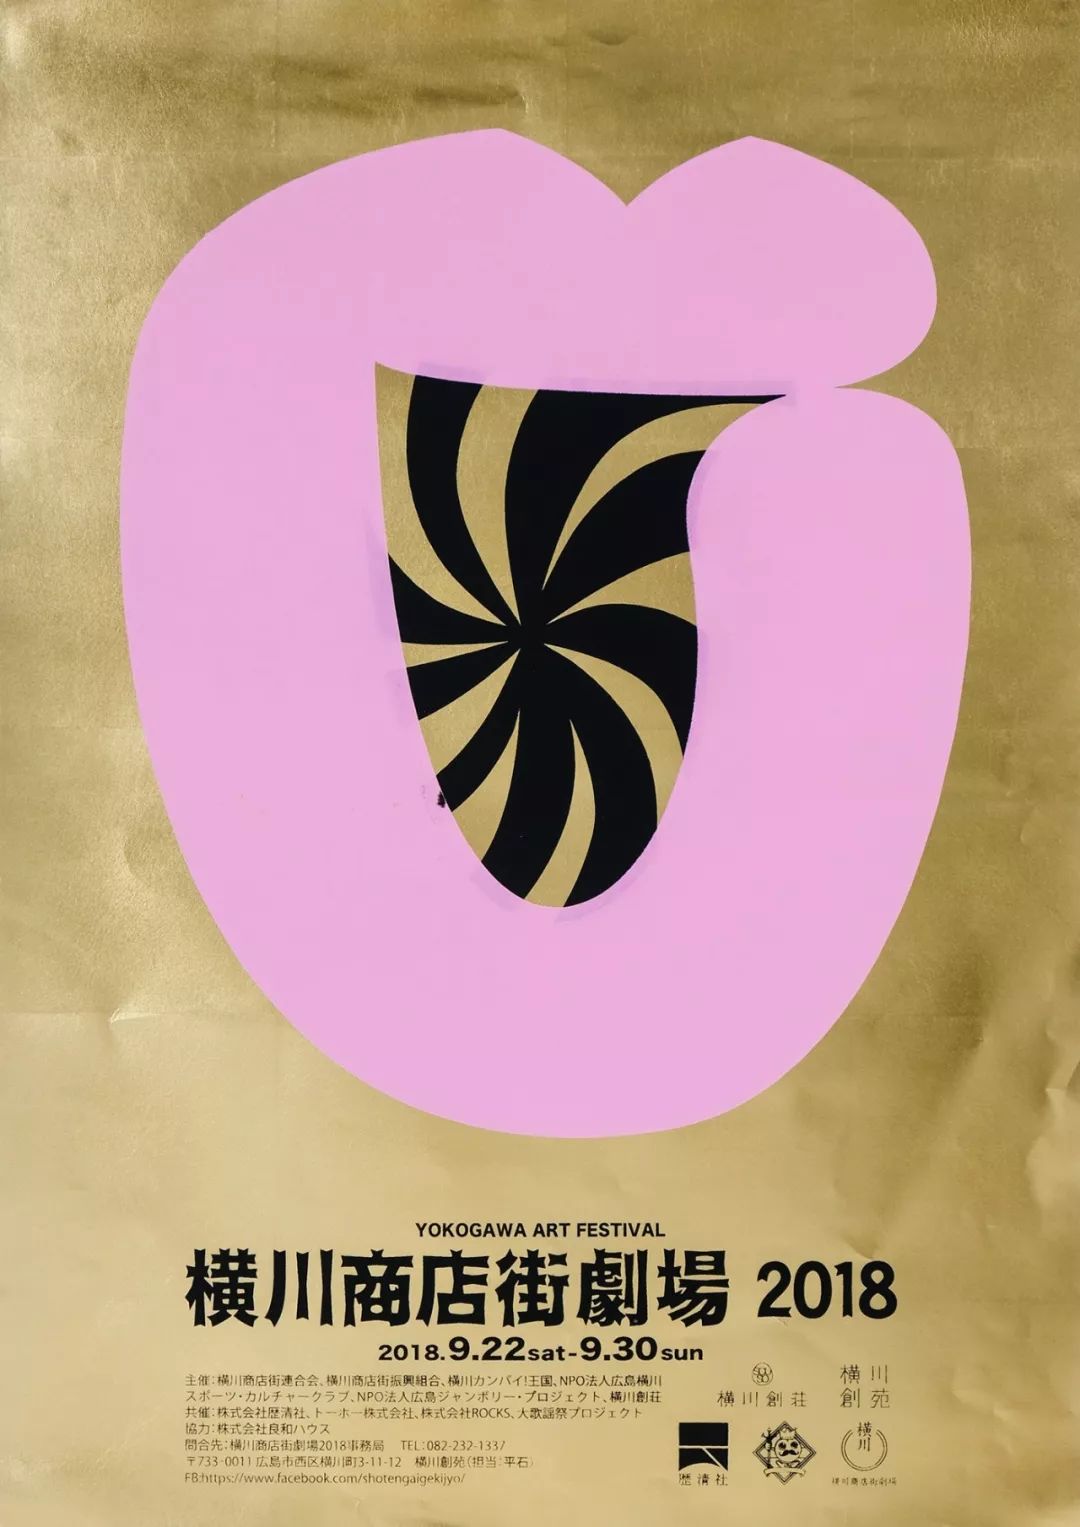 2019广岛艺术指导俱乐部年度设计大赏获奖作品